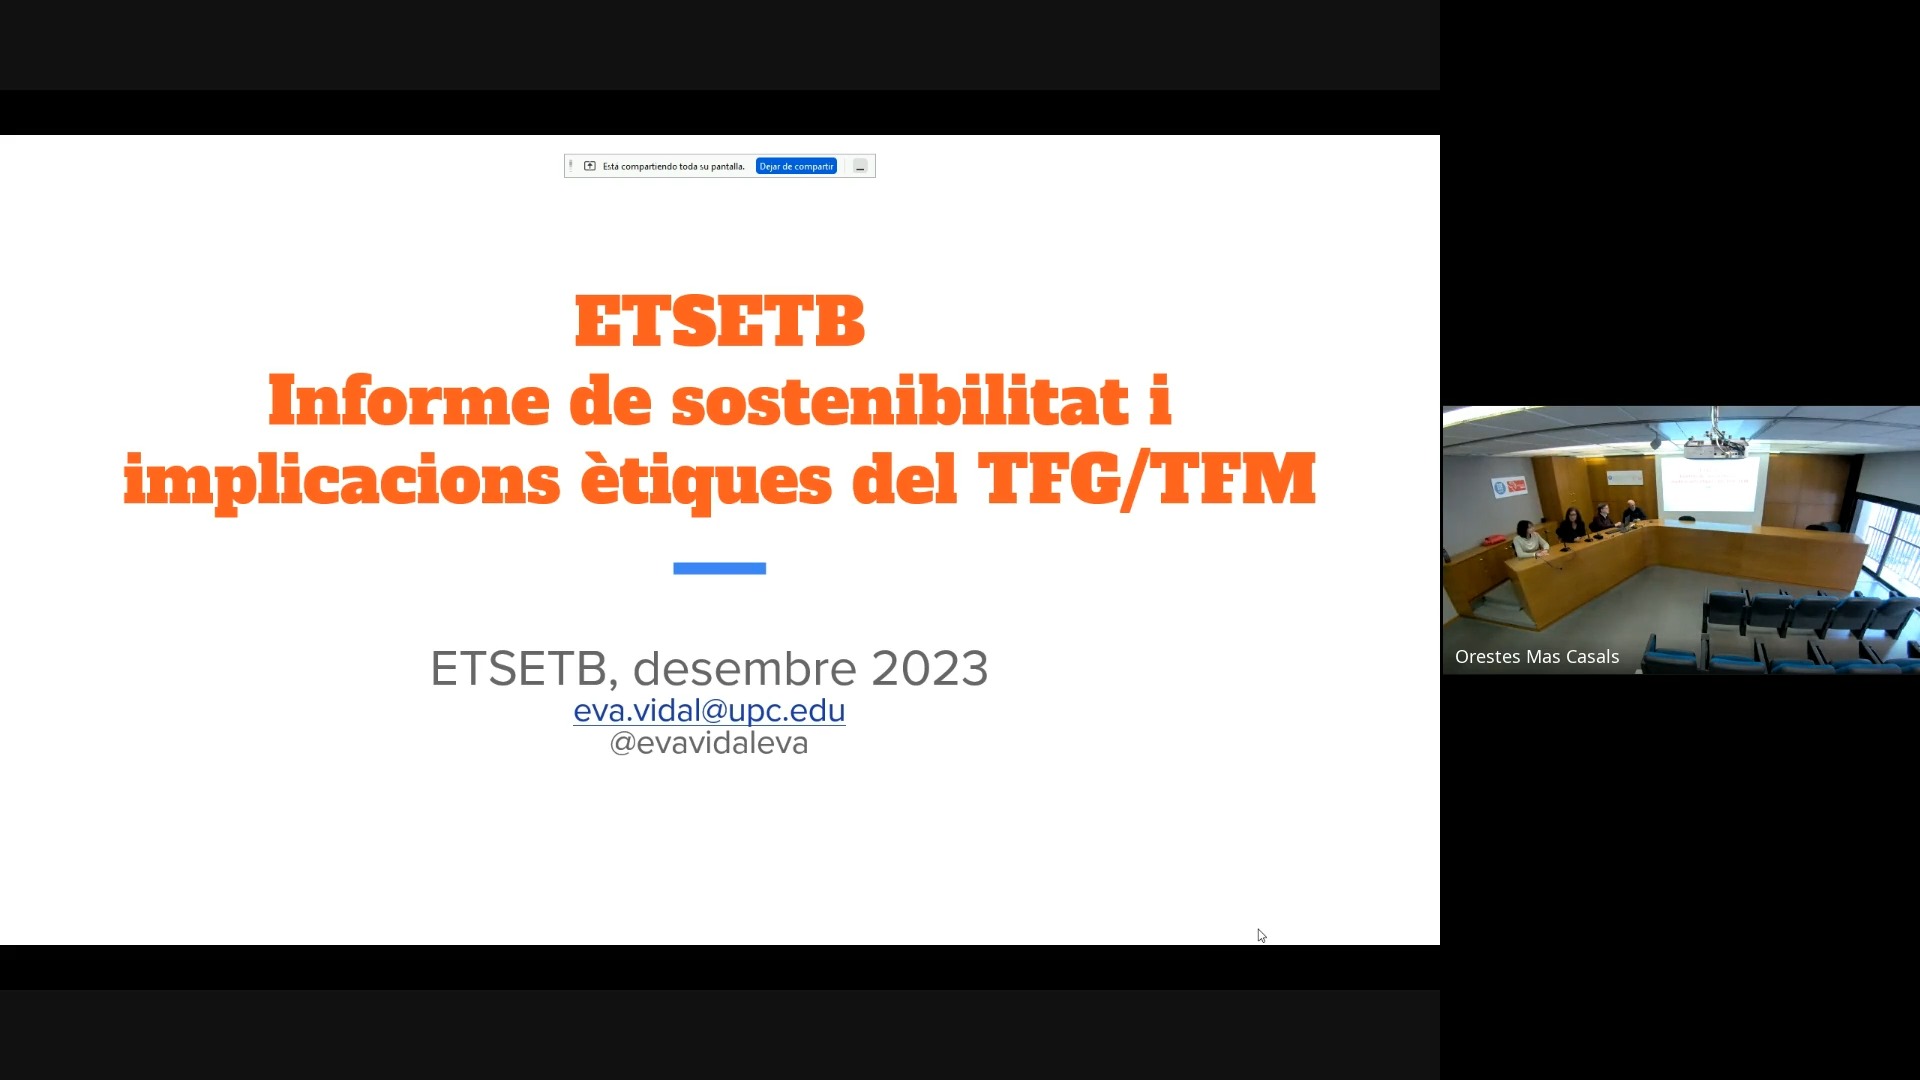 ETSETB sessió infomativa: informe de sostenibilitat als TFG/TFM